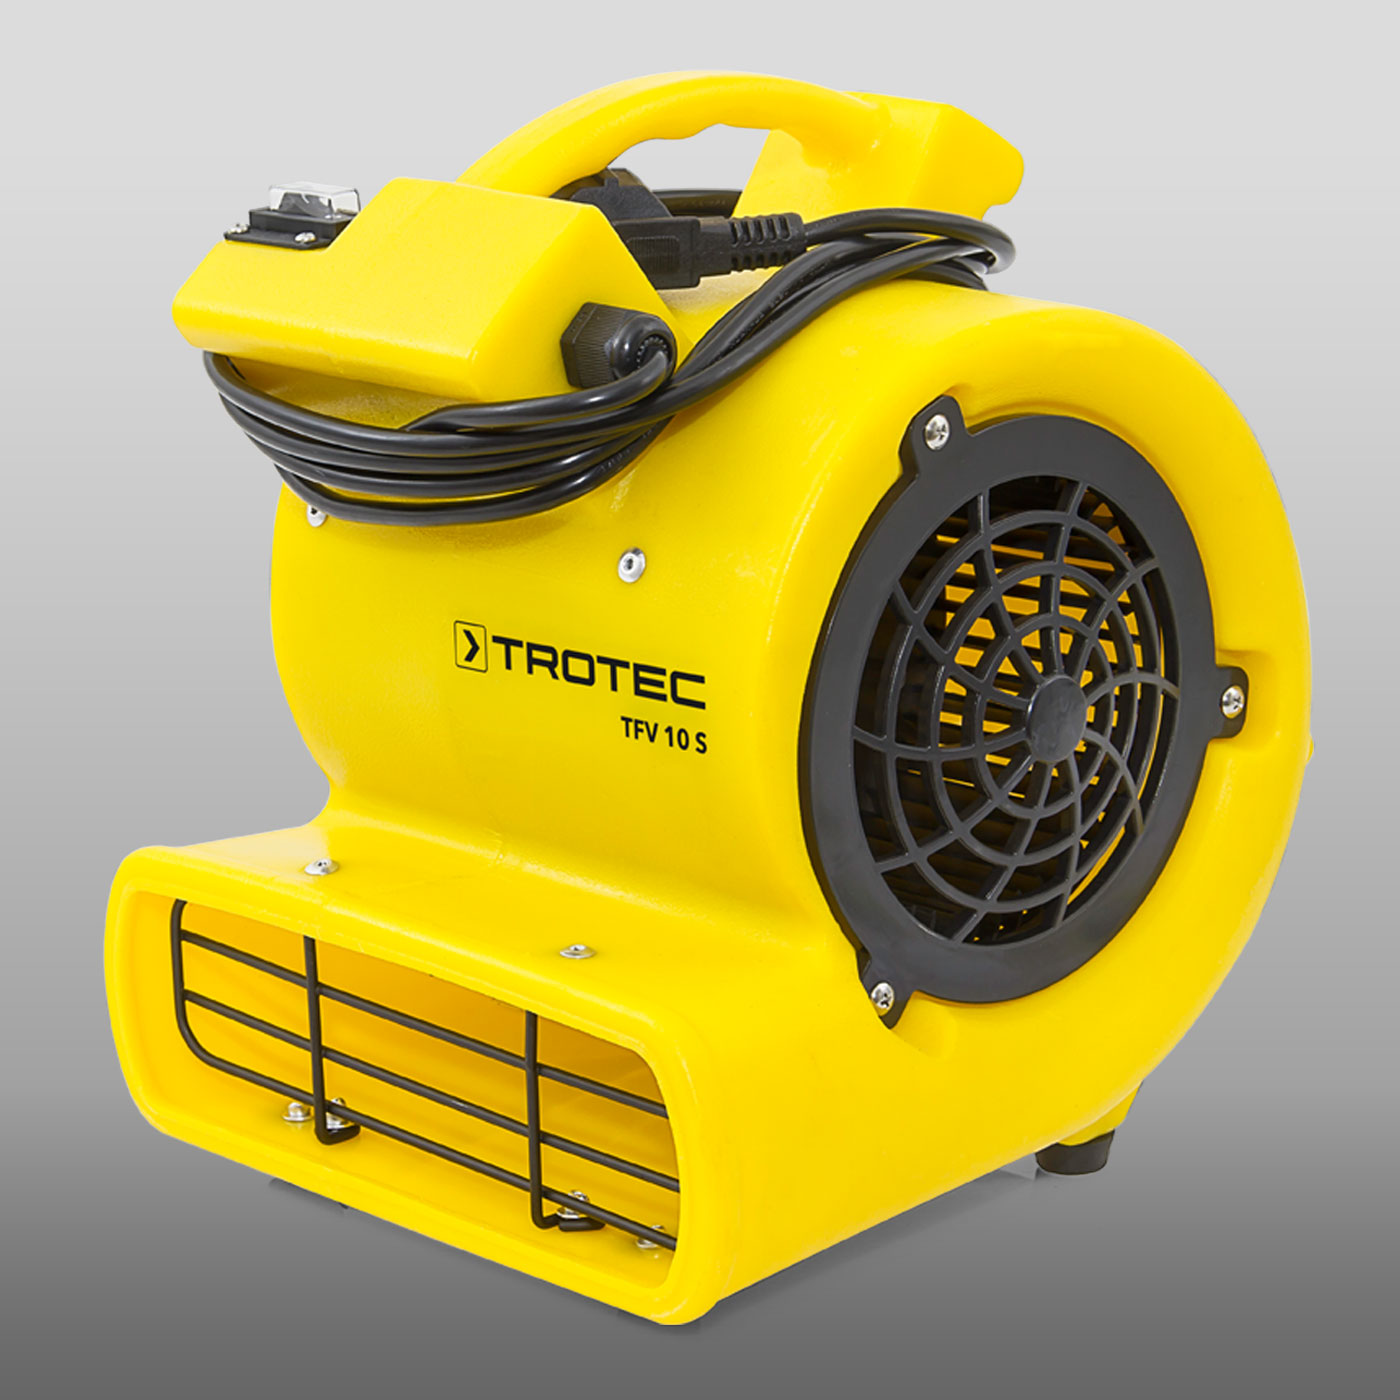 TROTEC Turbolüfter TFV 30Lüfter Radiallüfter Ventilator Baulüfter 2.200 m³/h 